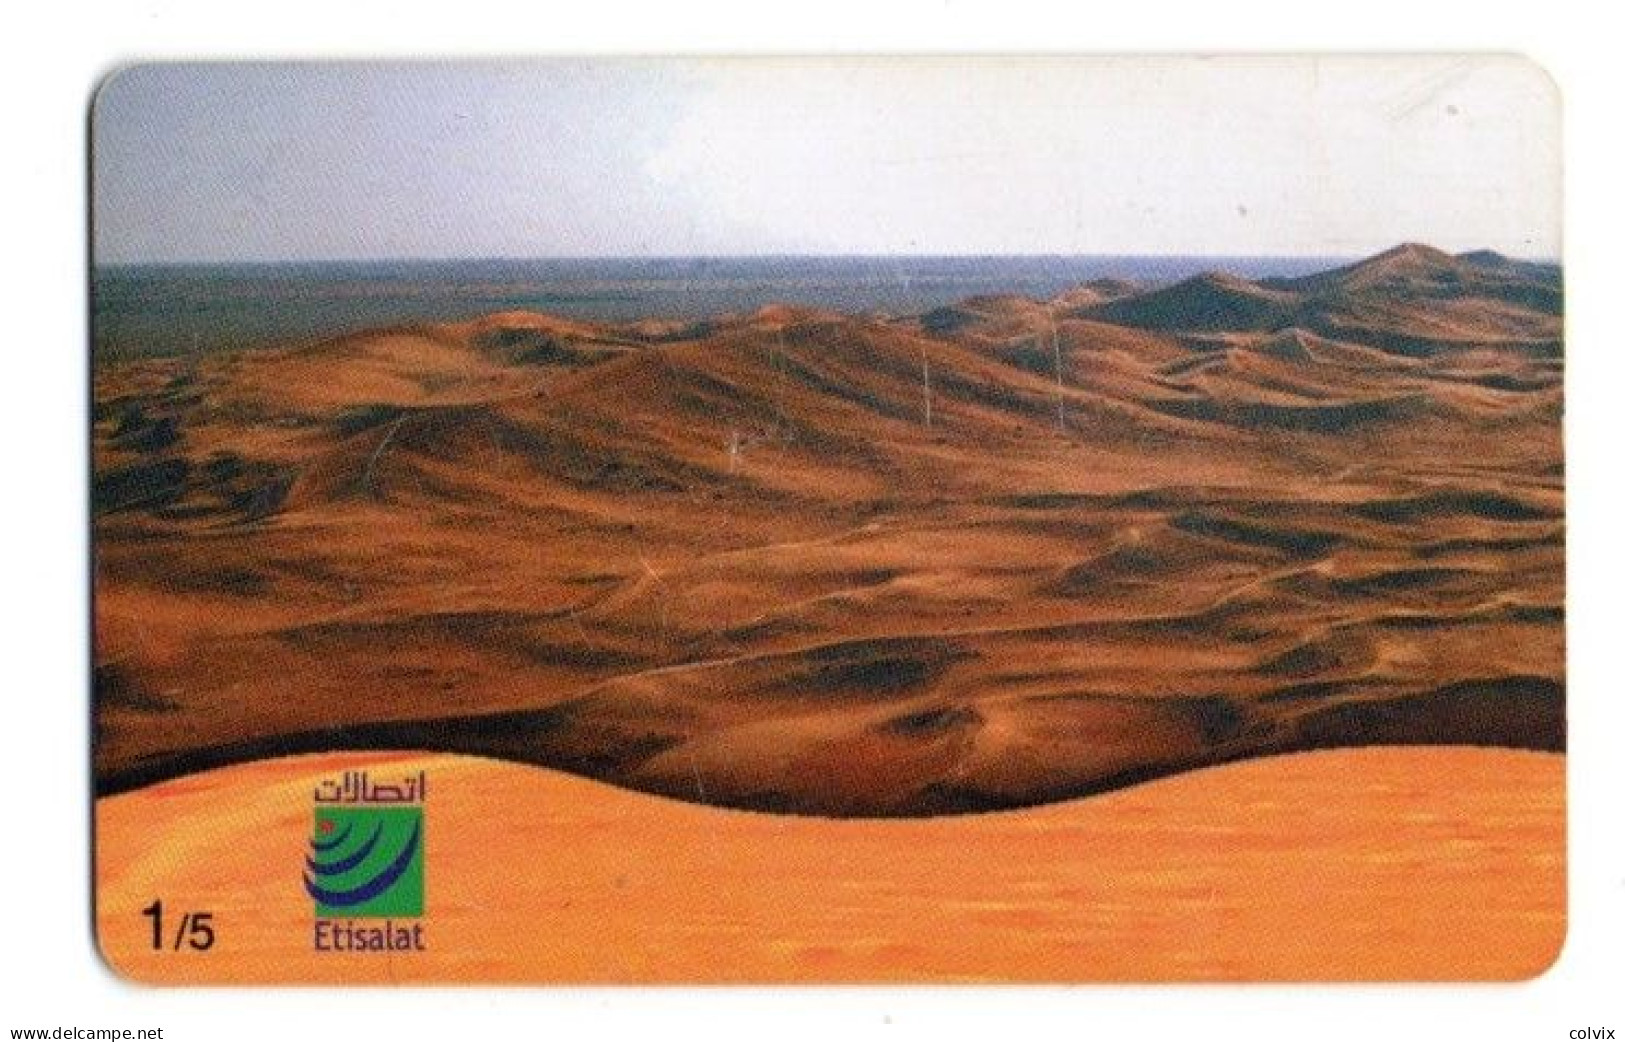 EMIRATS ARABES UNIS TELECARTE EMPTY QUARTER DESERT - Ver. Arab. Emirate